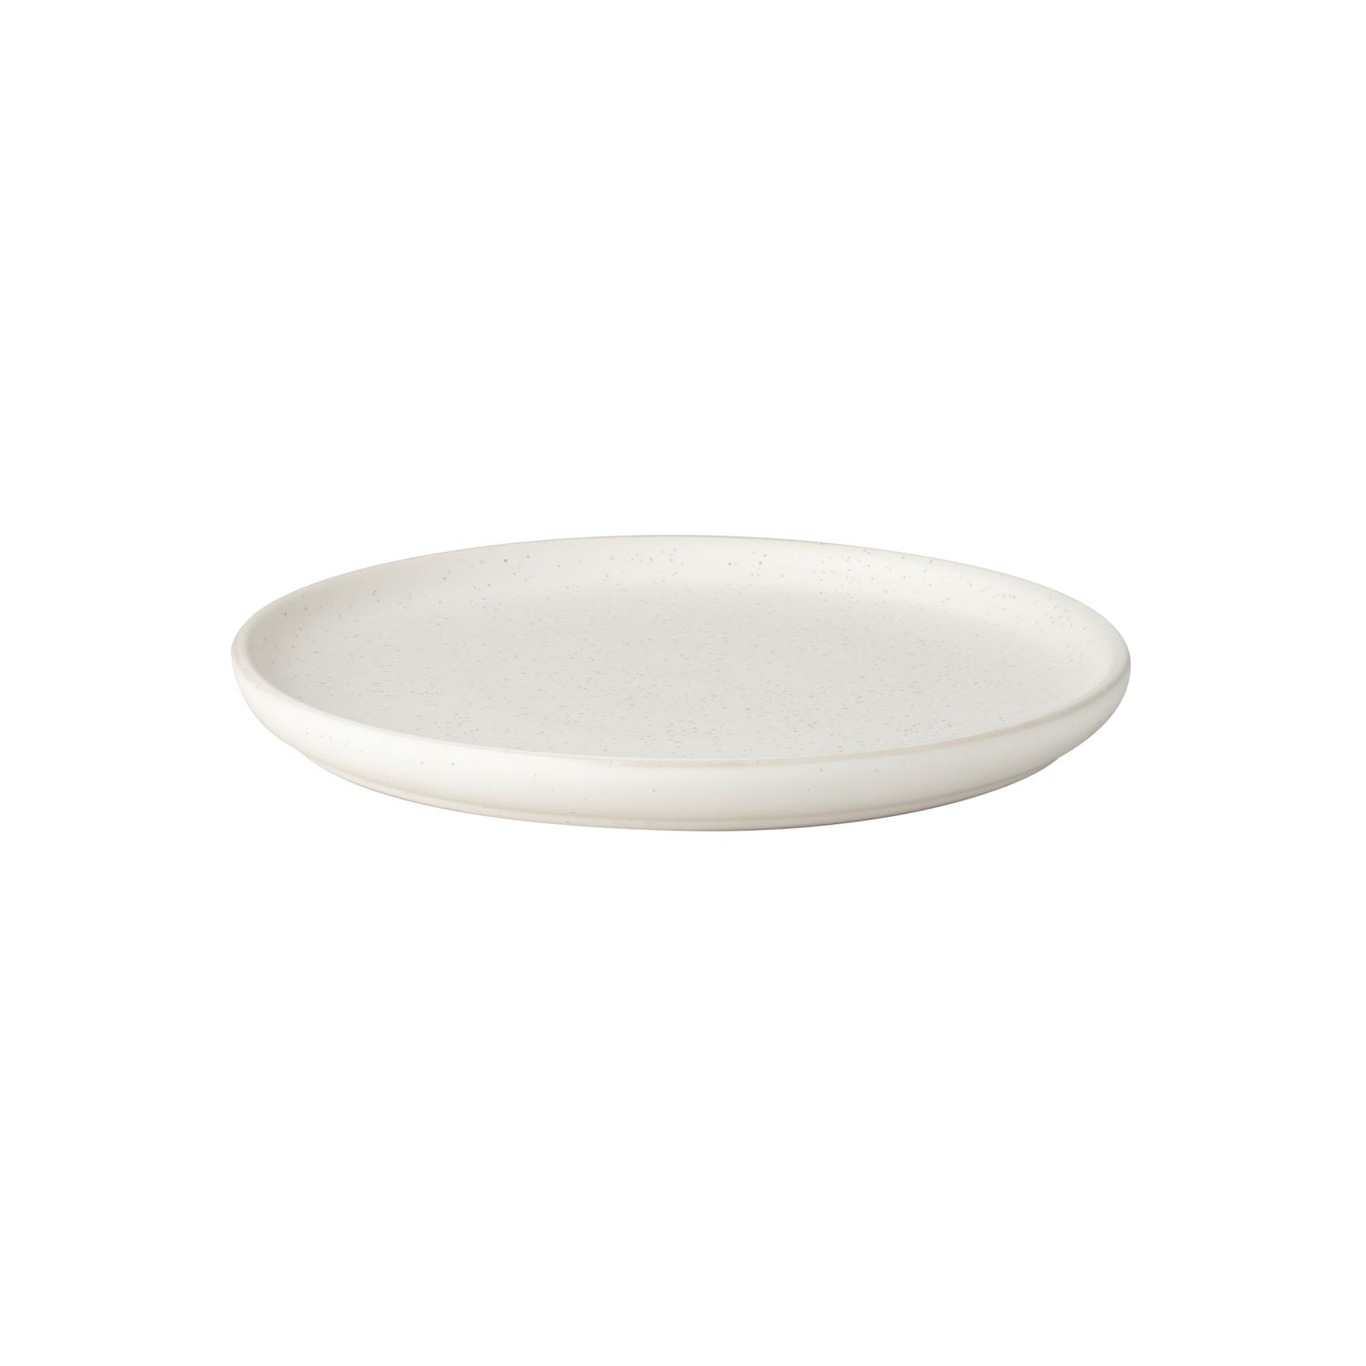 Plate 25 cm, White Dot